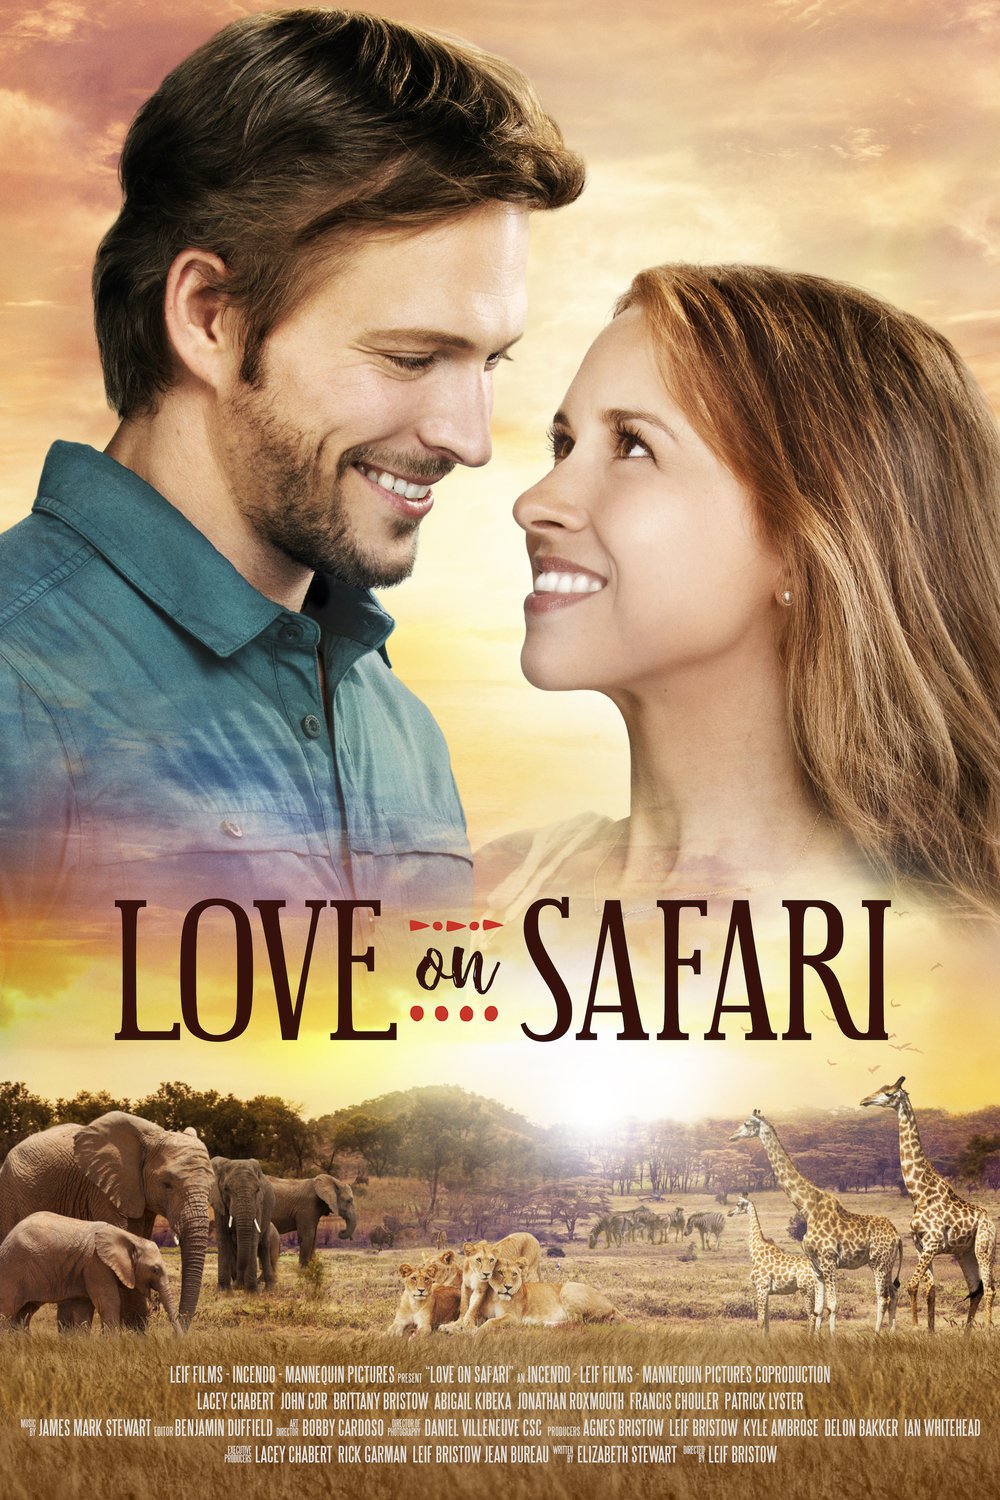 love on safari review